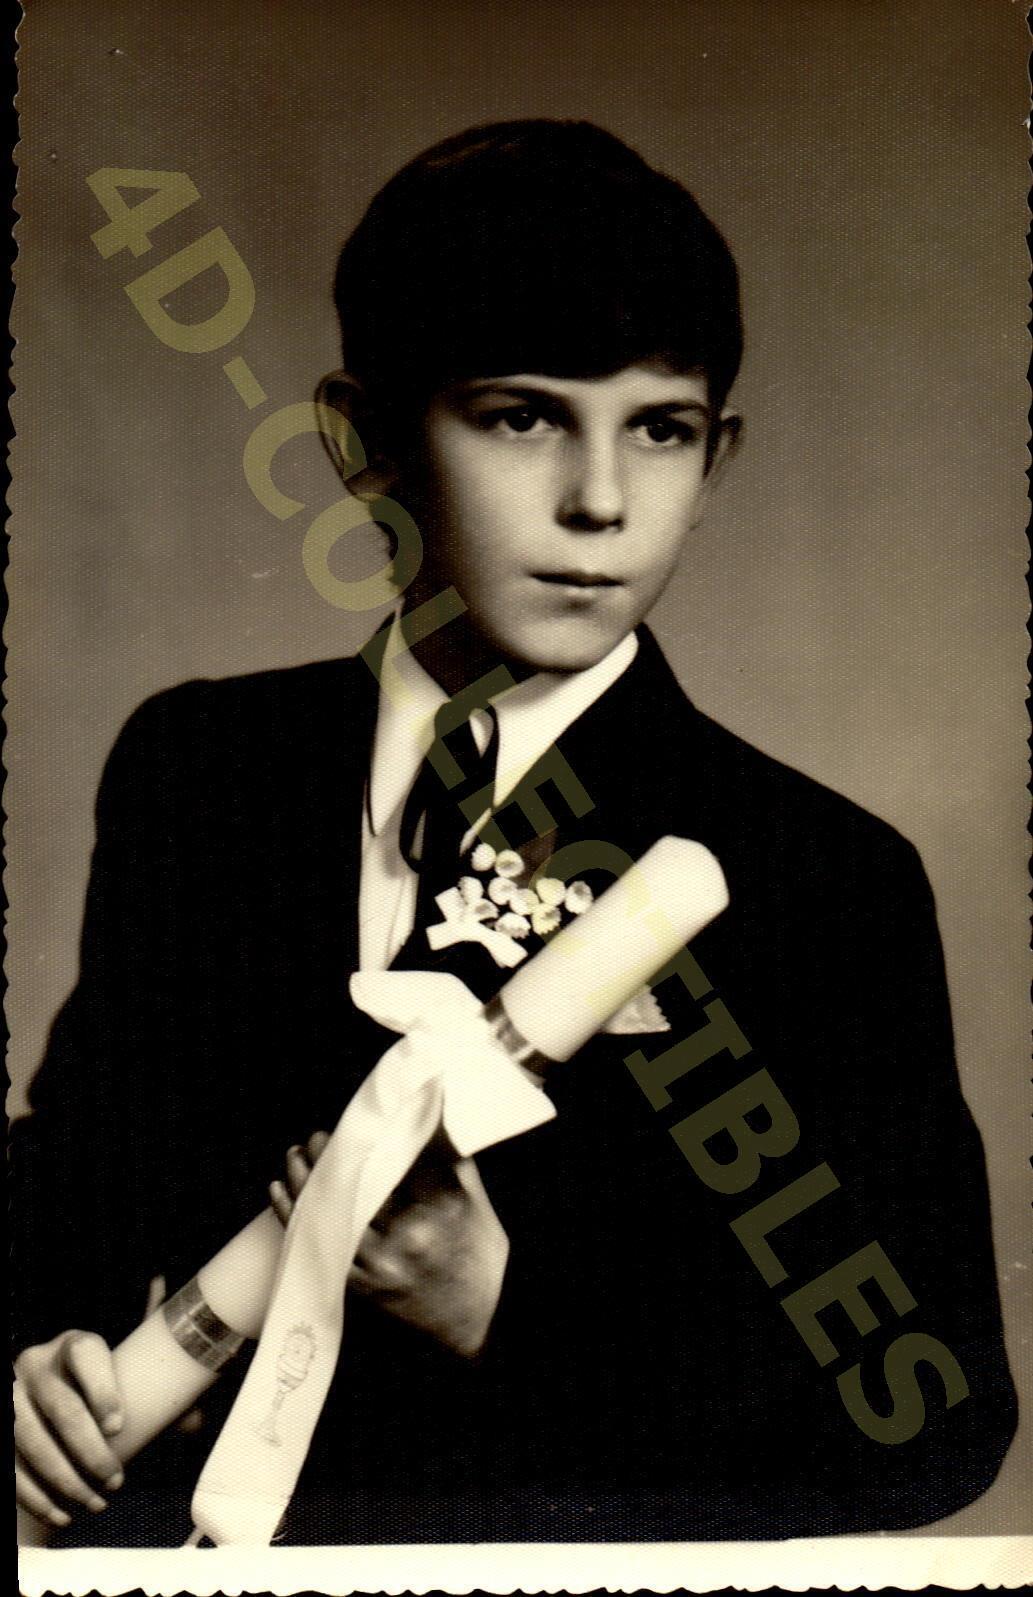 Vintage original Portrait Photograph  Young Boy with Graduation Certificate